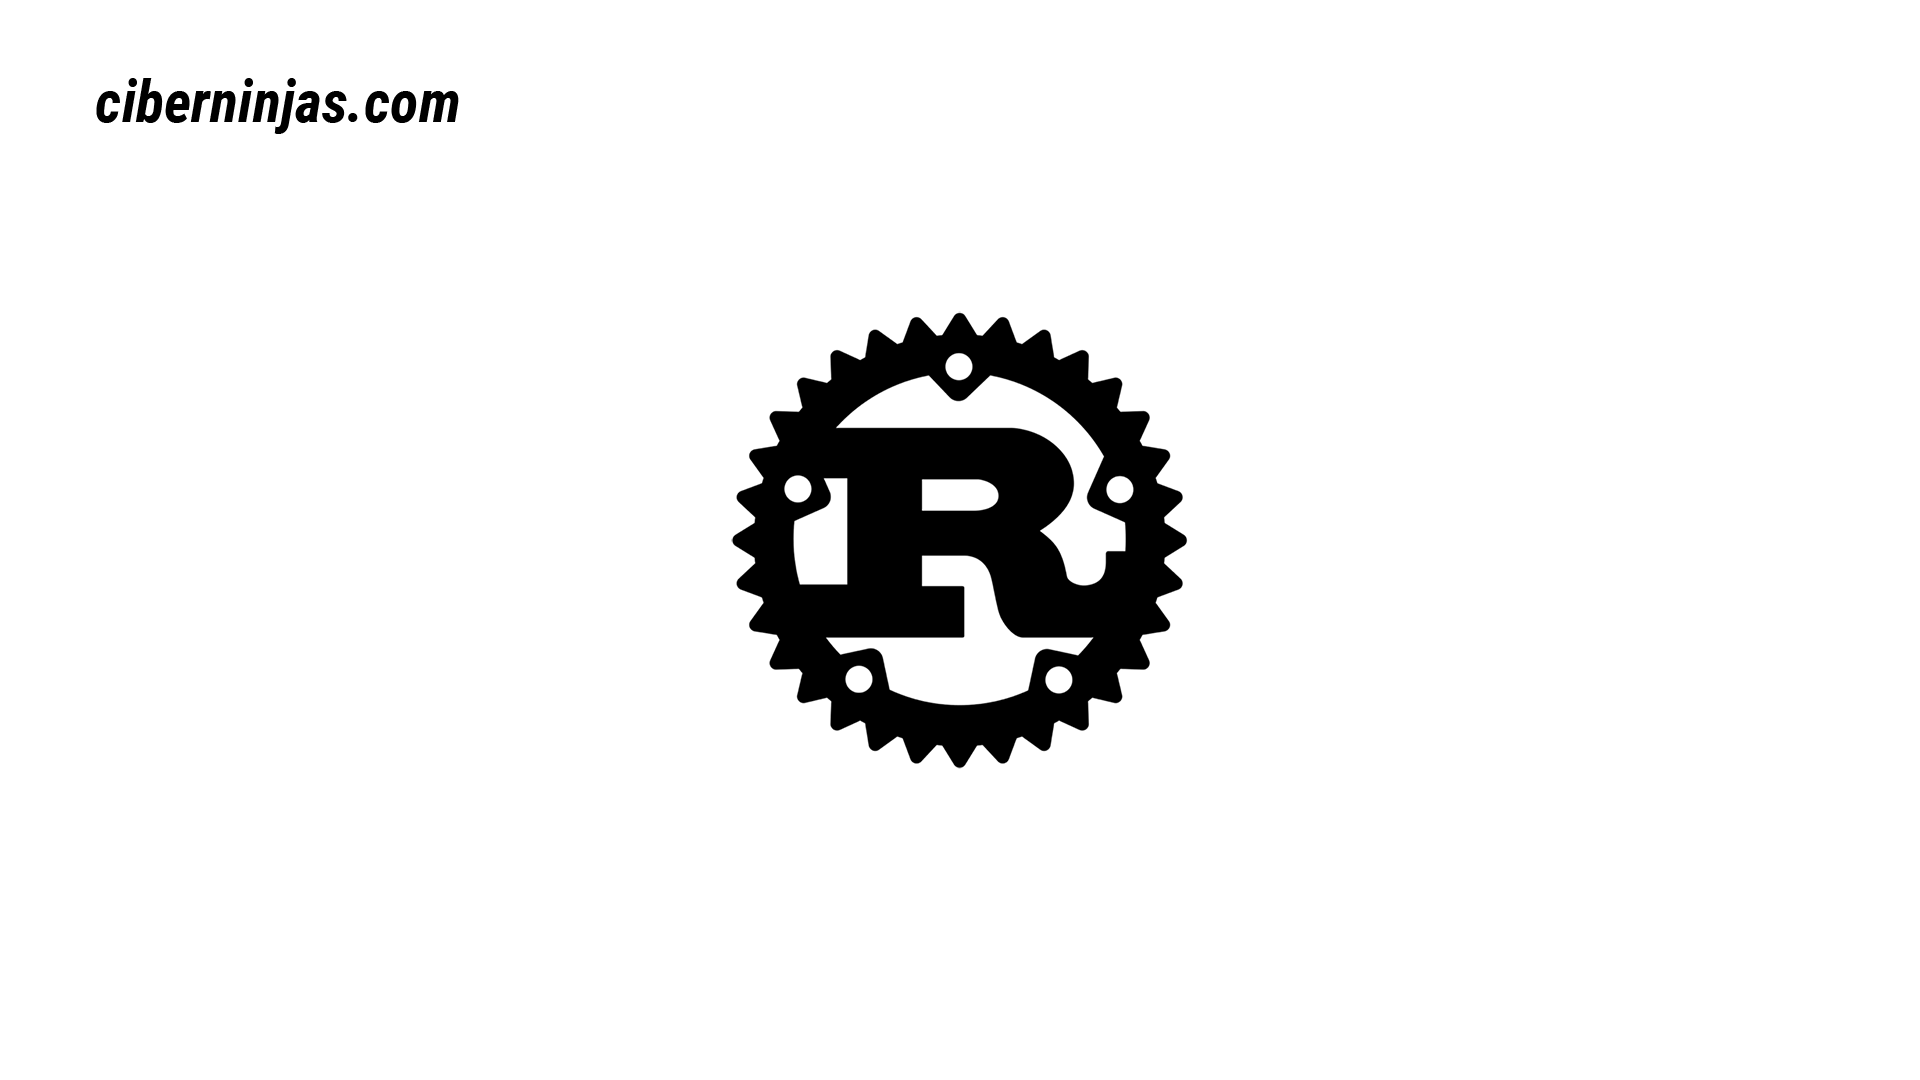 Rust logotipo visto en Ciberninjas